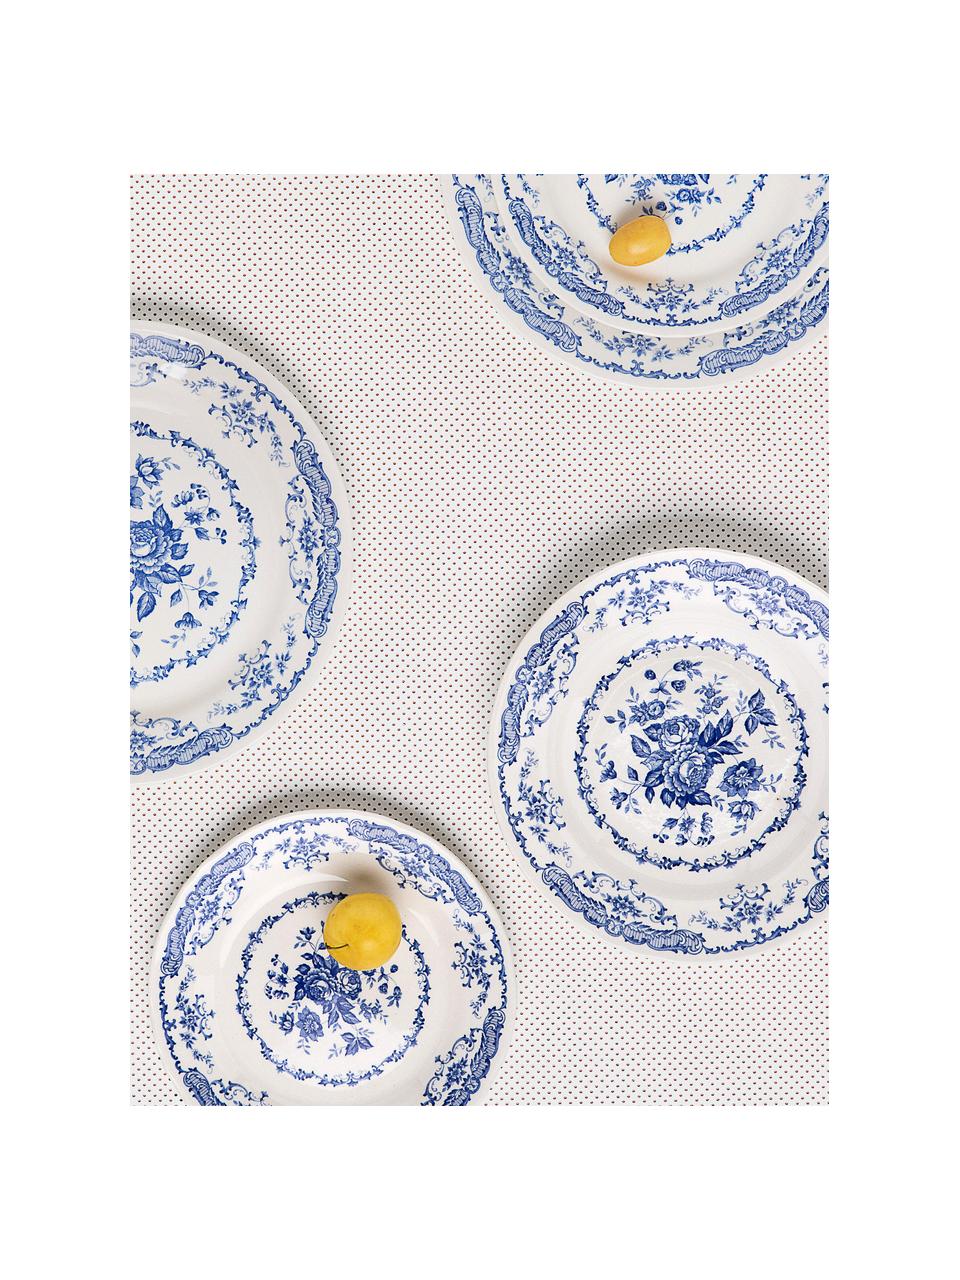 Soepborden Rose met bloemmotief in wit/blauw, 2 stuks, Keramiek, Wit, blauw, Ø 23 x H 4 cm